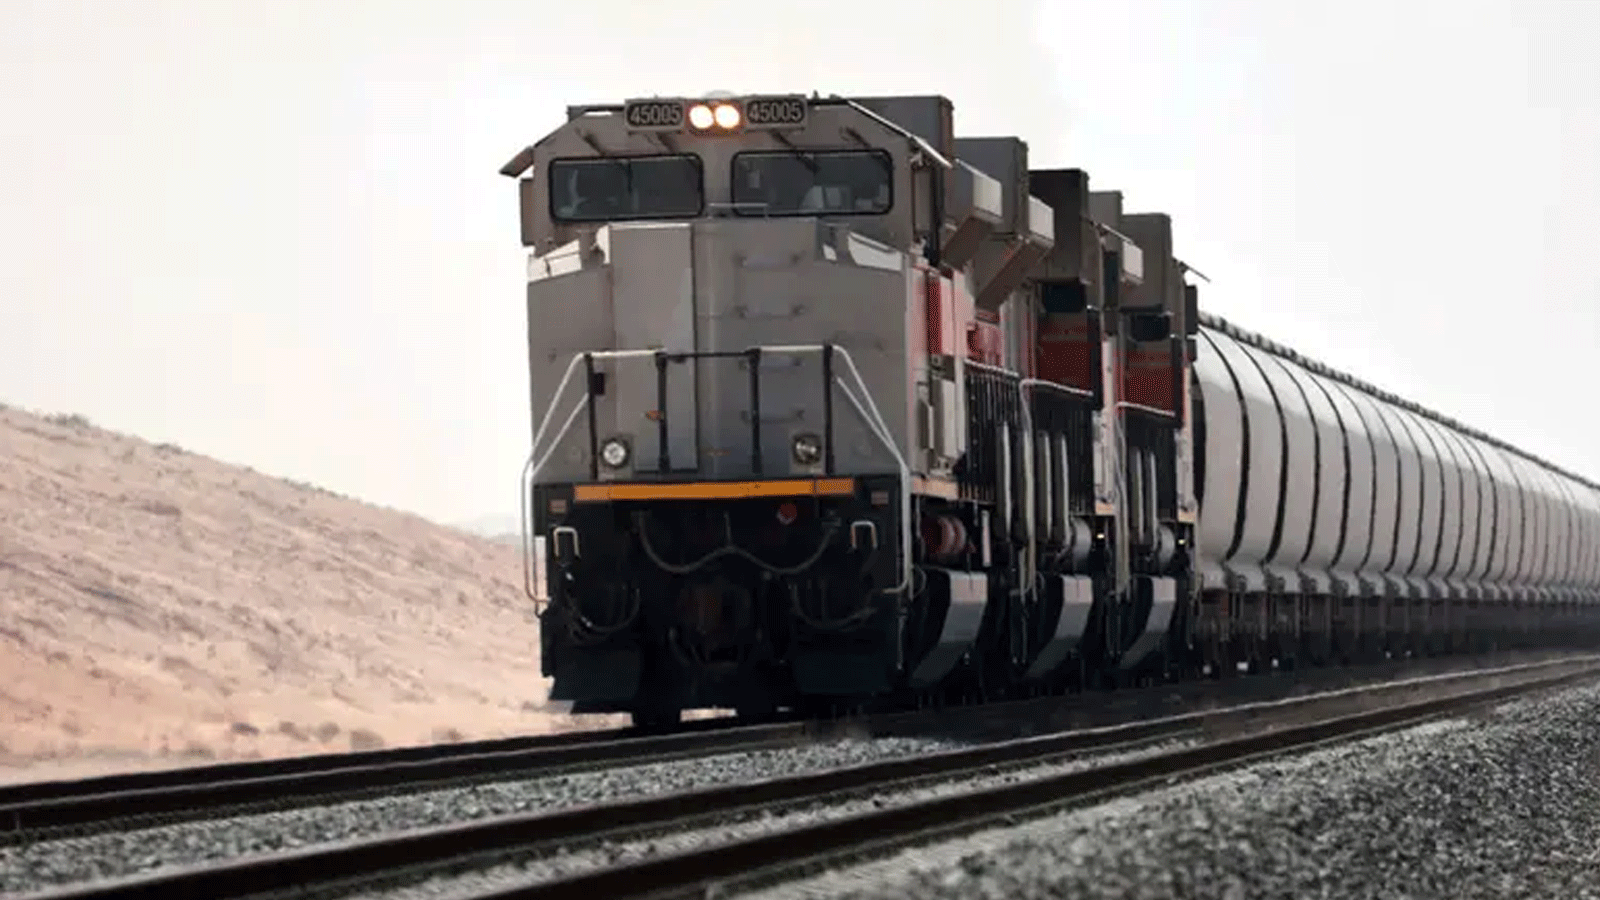 صورة تم التقاطها في 1 نيسان\ أبريل 2021 تُظهر قطارًا تابعًا لشبكة الاتحاد للقطارات في المرفأ بدولة الإمارات العربية المتحدة.